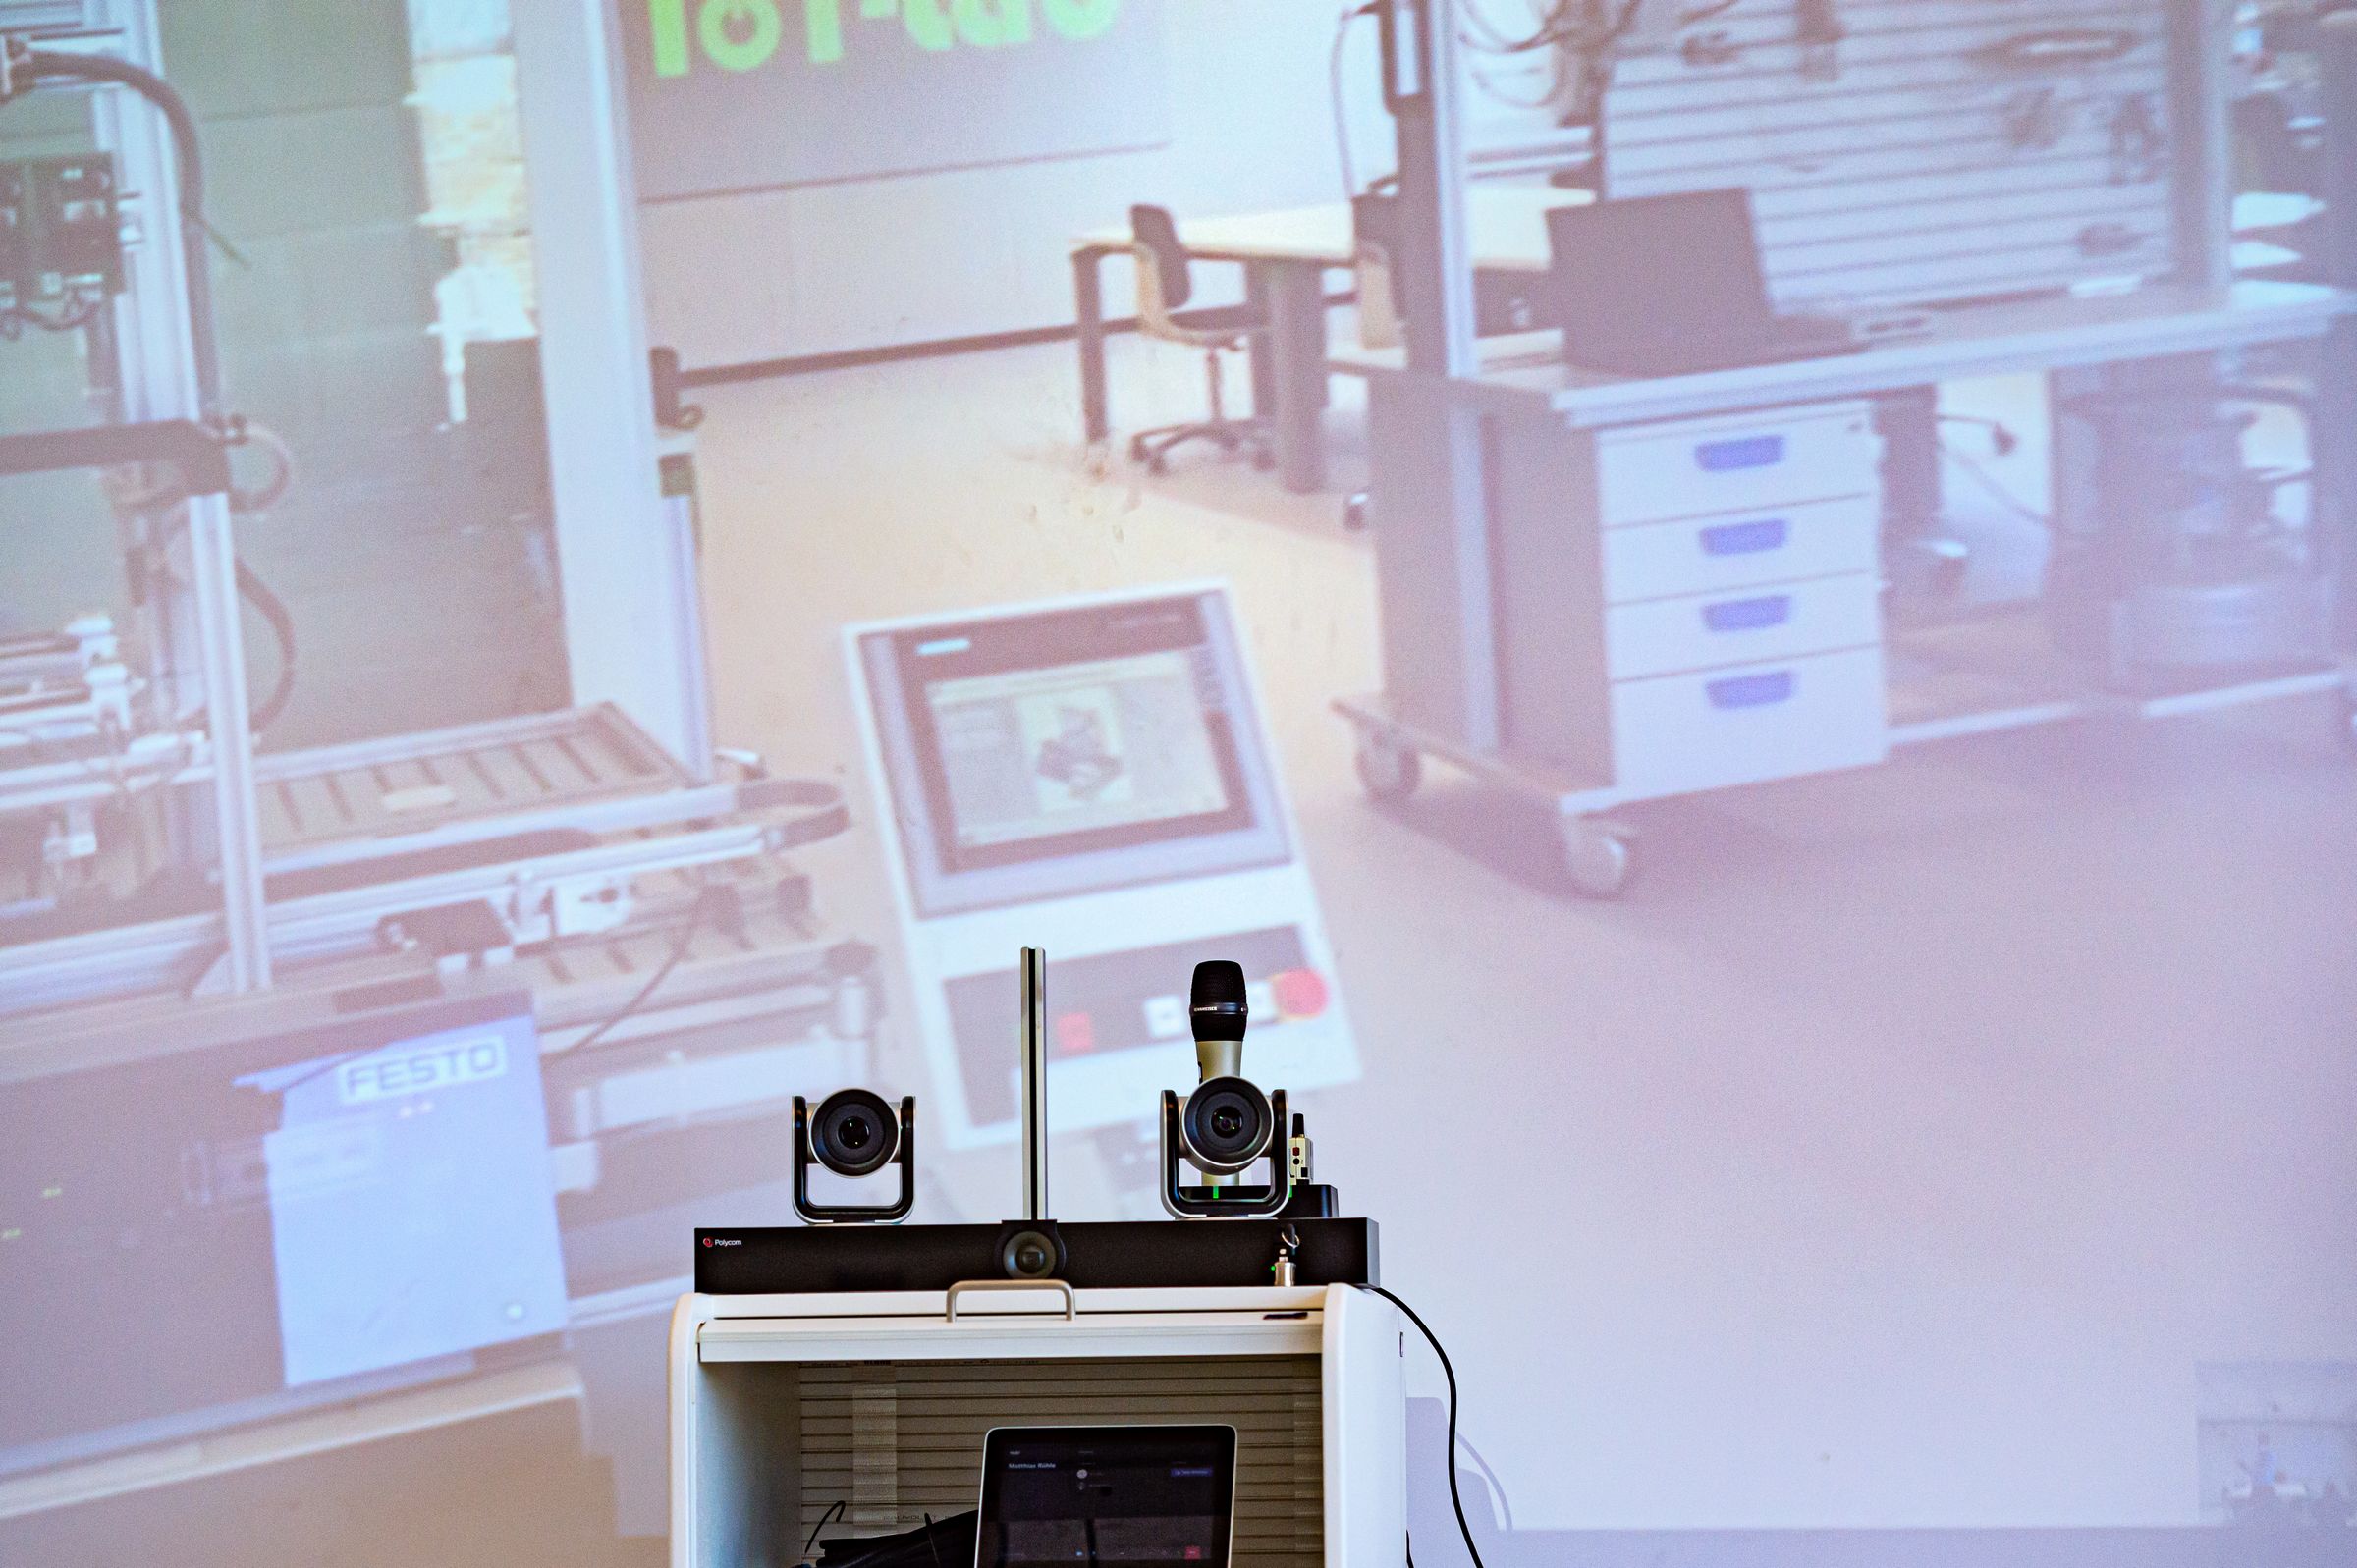  IoT Lab Esslingen: Ausstattung Videokonferenzsystem